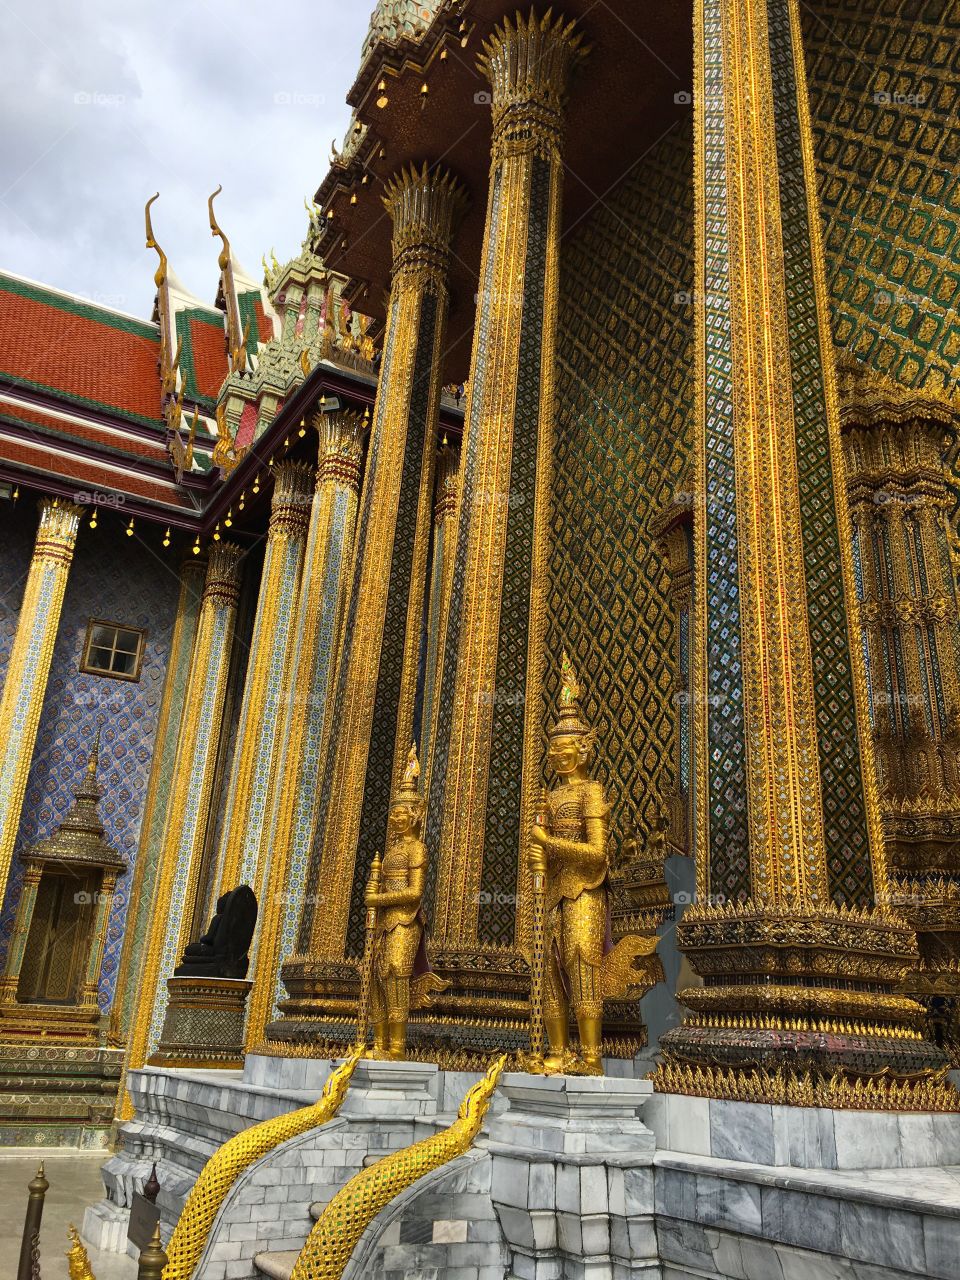 Grand Palace / Bangkok Thailand 27